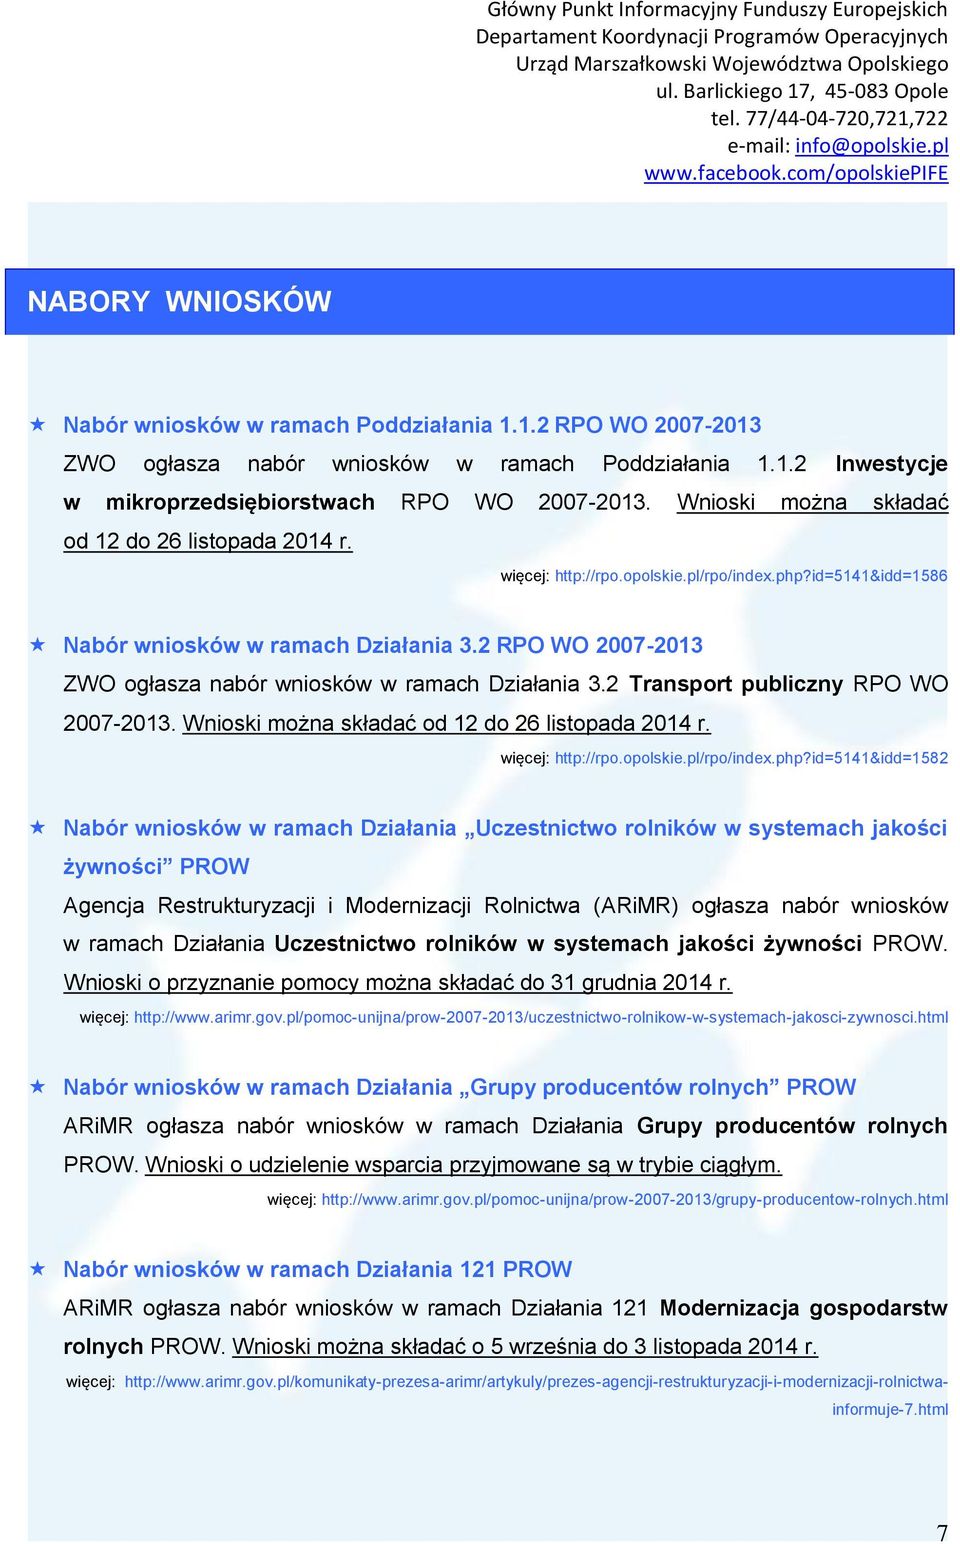 2 RPO WO 2007-2013 ZWO ogłasza nabór wniosków w ramach Działania 3.2 Transport publiczny RPO WO 2007-2013. Wnioski można składać od 12 do 26 listopada 2014 r. więcej: http://rpo.opolskie.pl/rpo/index.